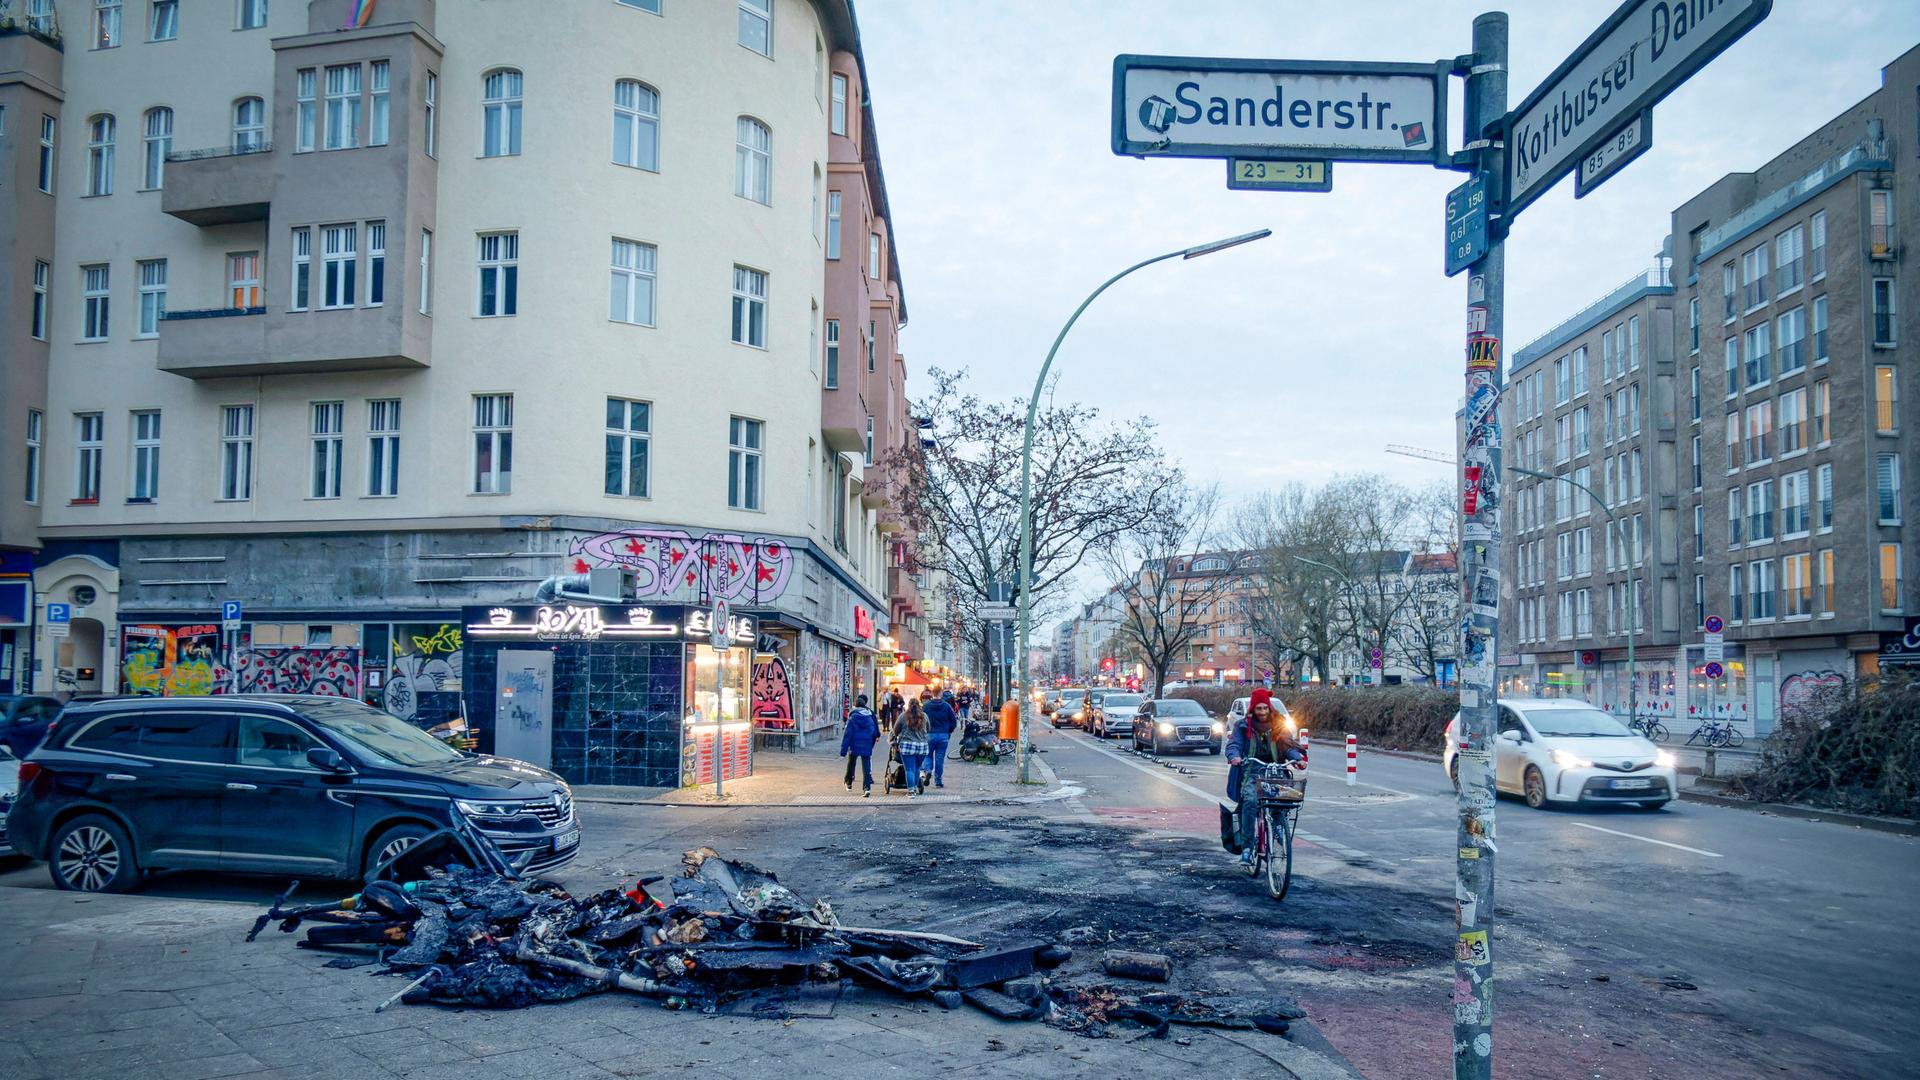 Überreste von verbrannten Mülltonnen und E-Scootern nach Randale in der Silvesternacht Sanderstrasse Ecke Kottbusser Damm in Neukölln.